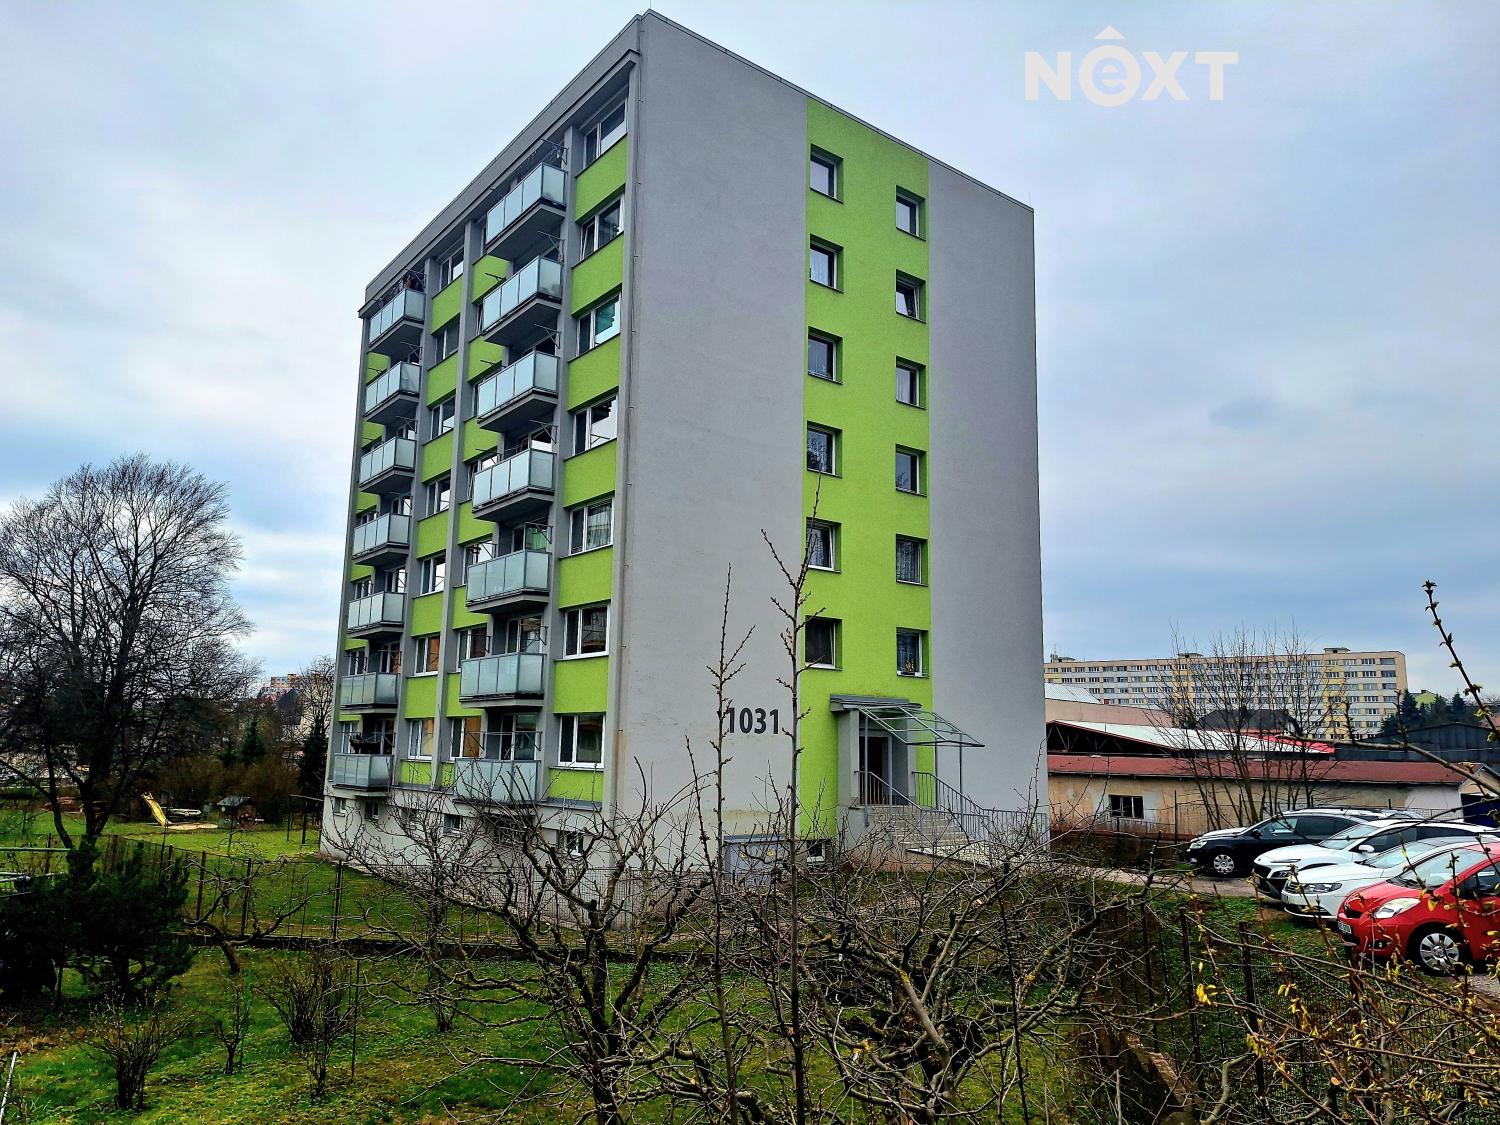 Prodej byt 2+1, 64㎡|Královéhradecký kraj, Trutnov, Vrchlabí, Dělnická 1031, 54301